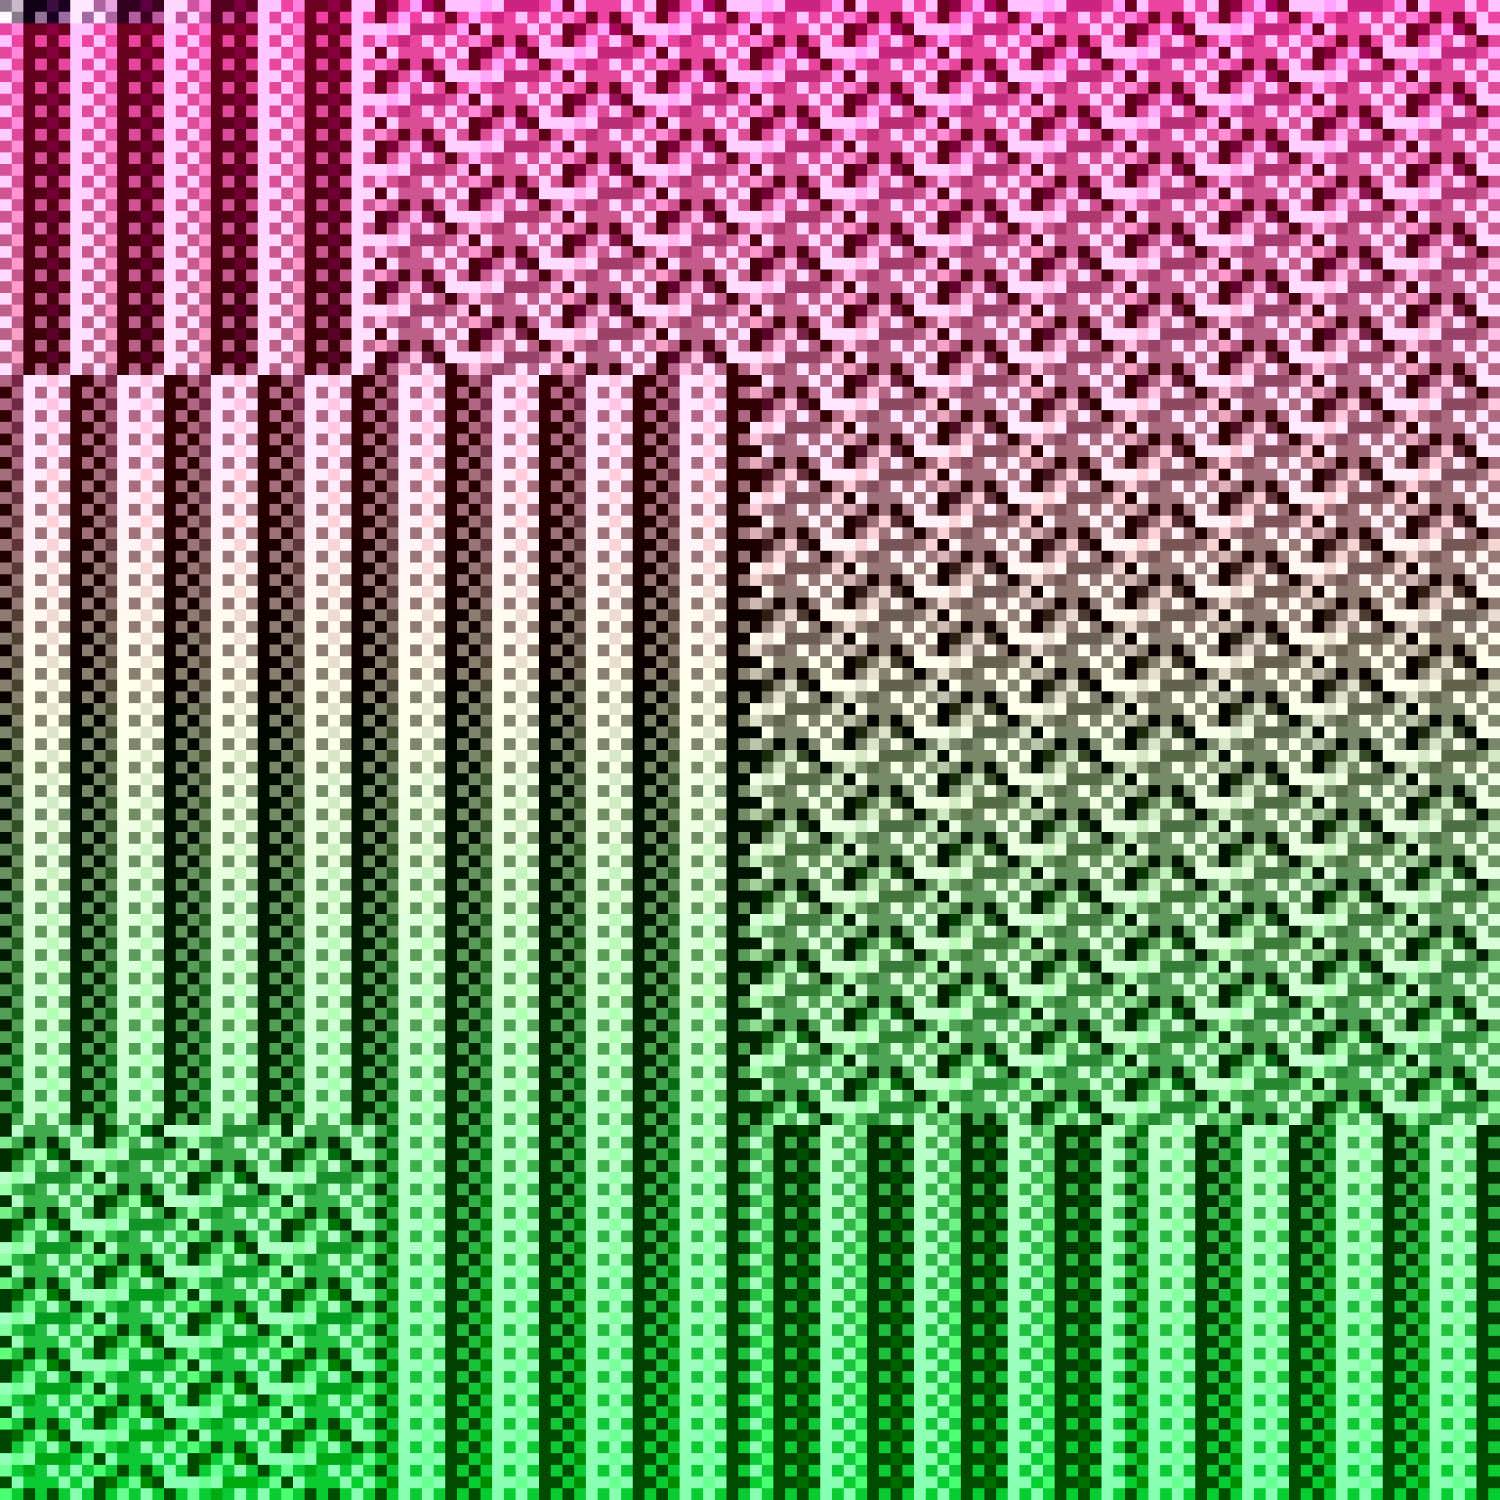 Color gradient test pattern